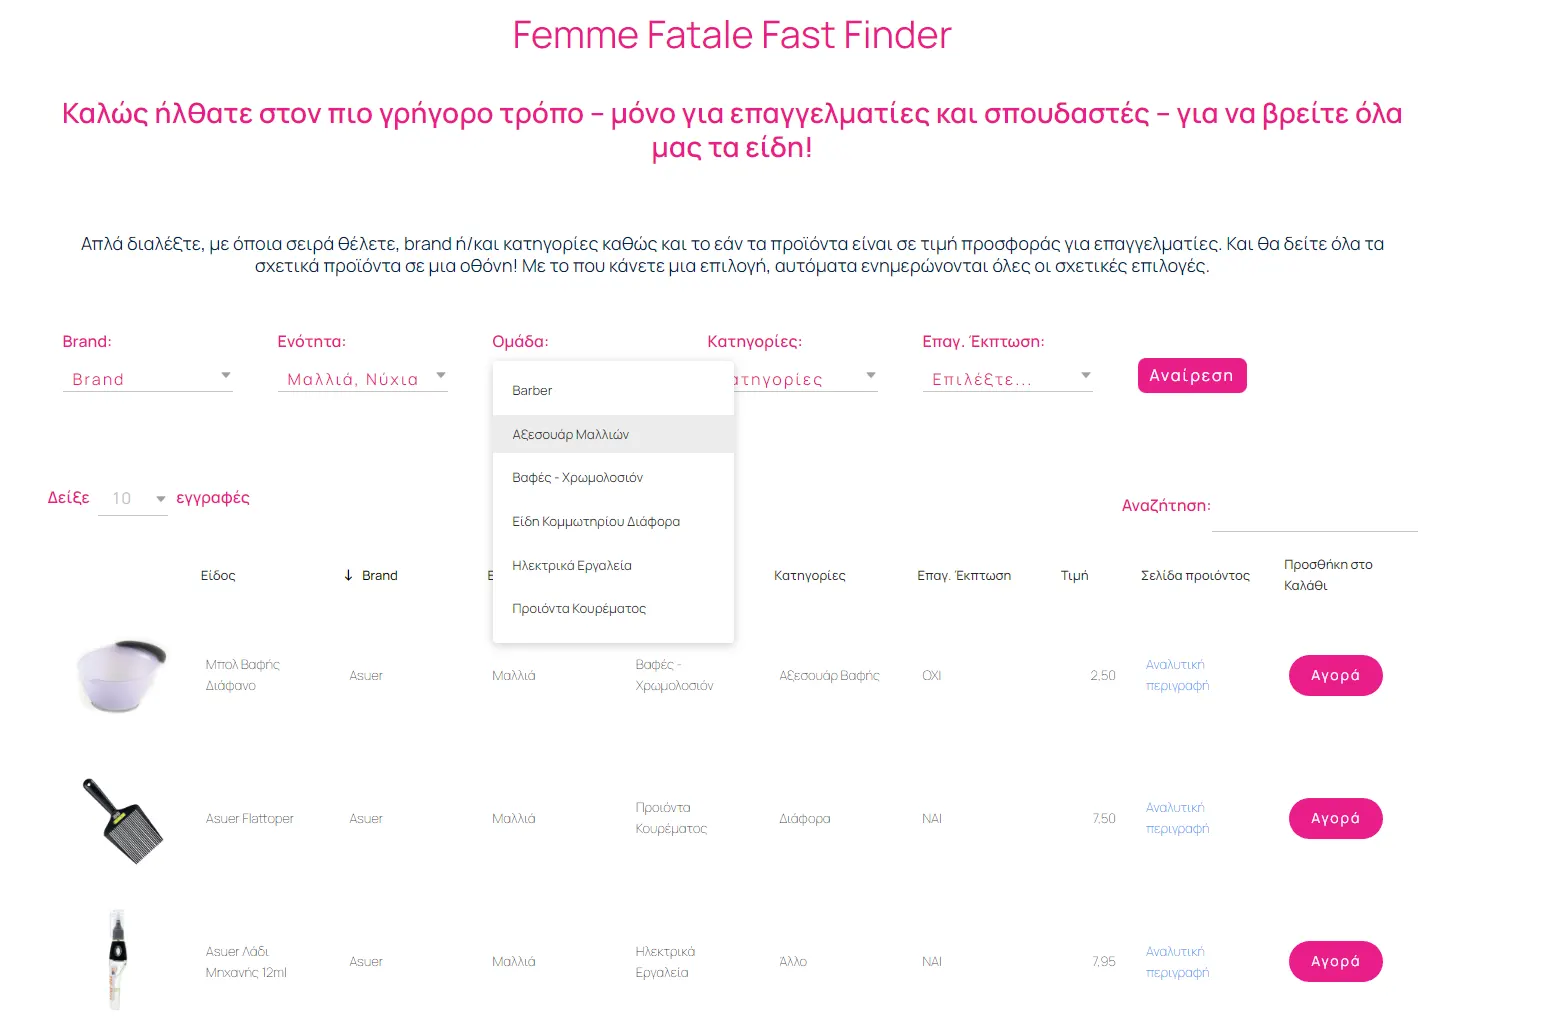 Είσαι Επαγγελματίας ή Σπουδαστής στο χώρο της Ομορφιάς; - Femme Fatale - Femme Fatale Fast Finder